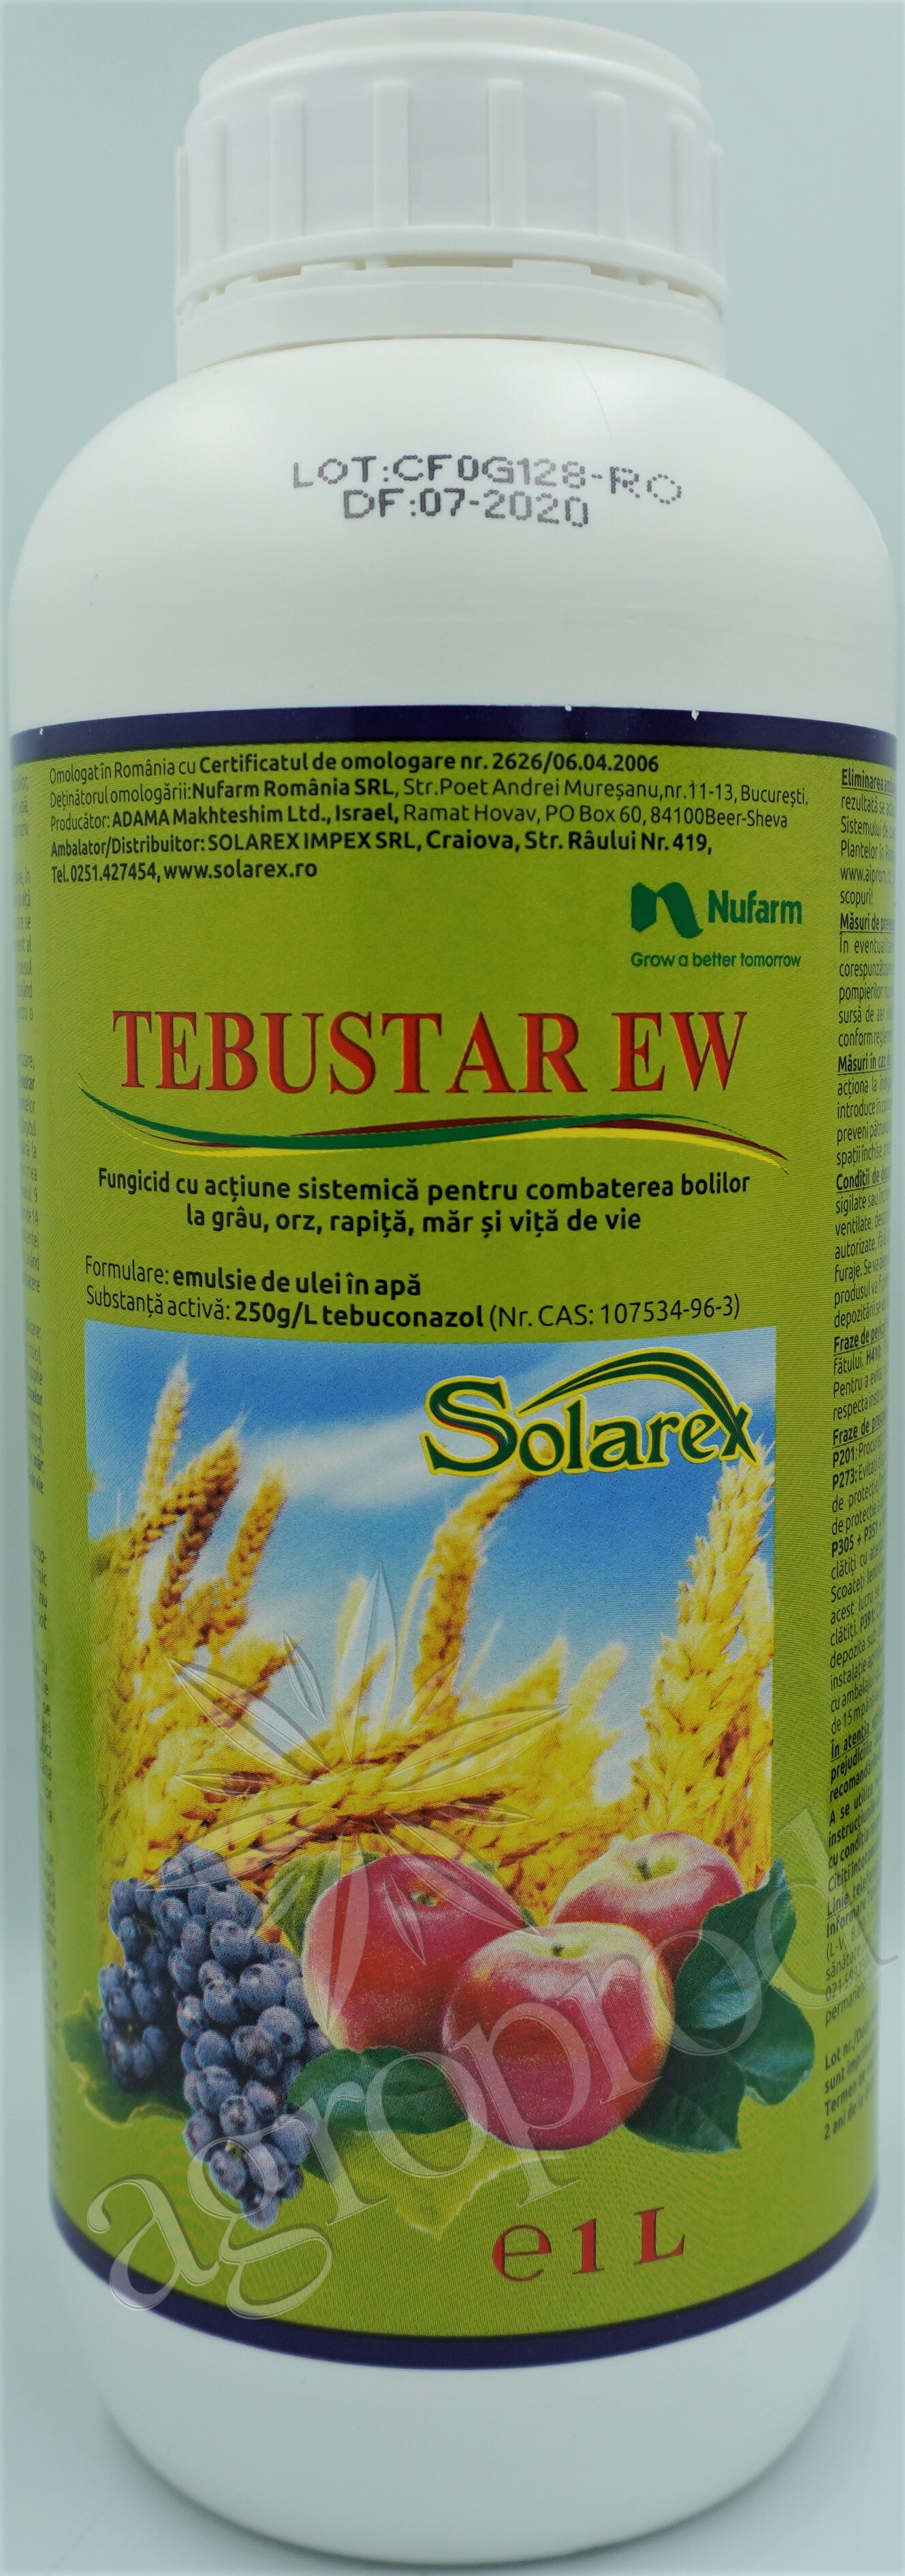 Tebustar EW 1L - tebuconazol 250g/l